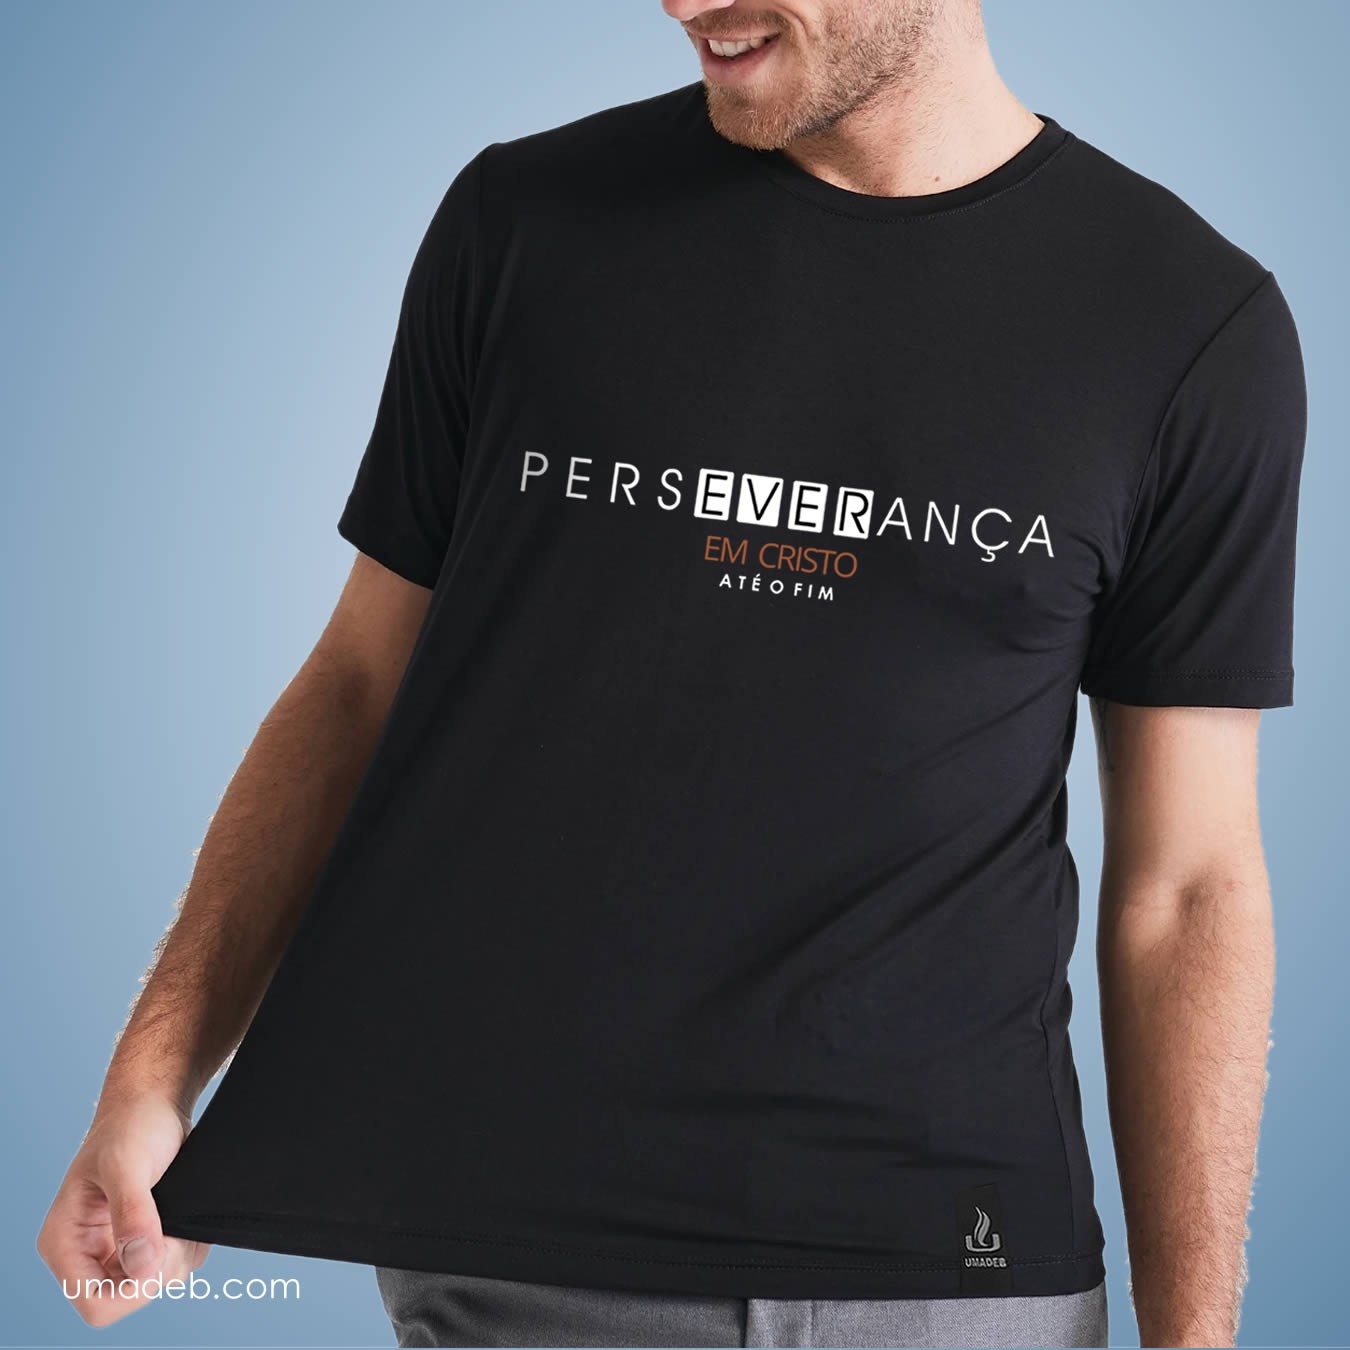 Camiseta UMADEB 2022 - Masculina